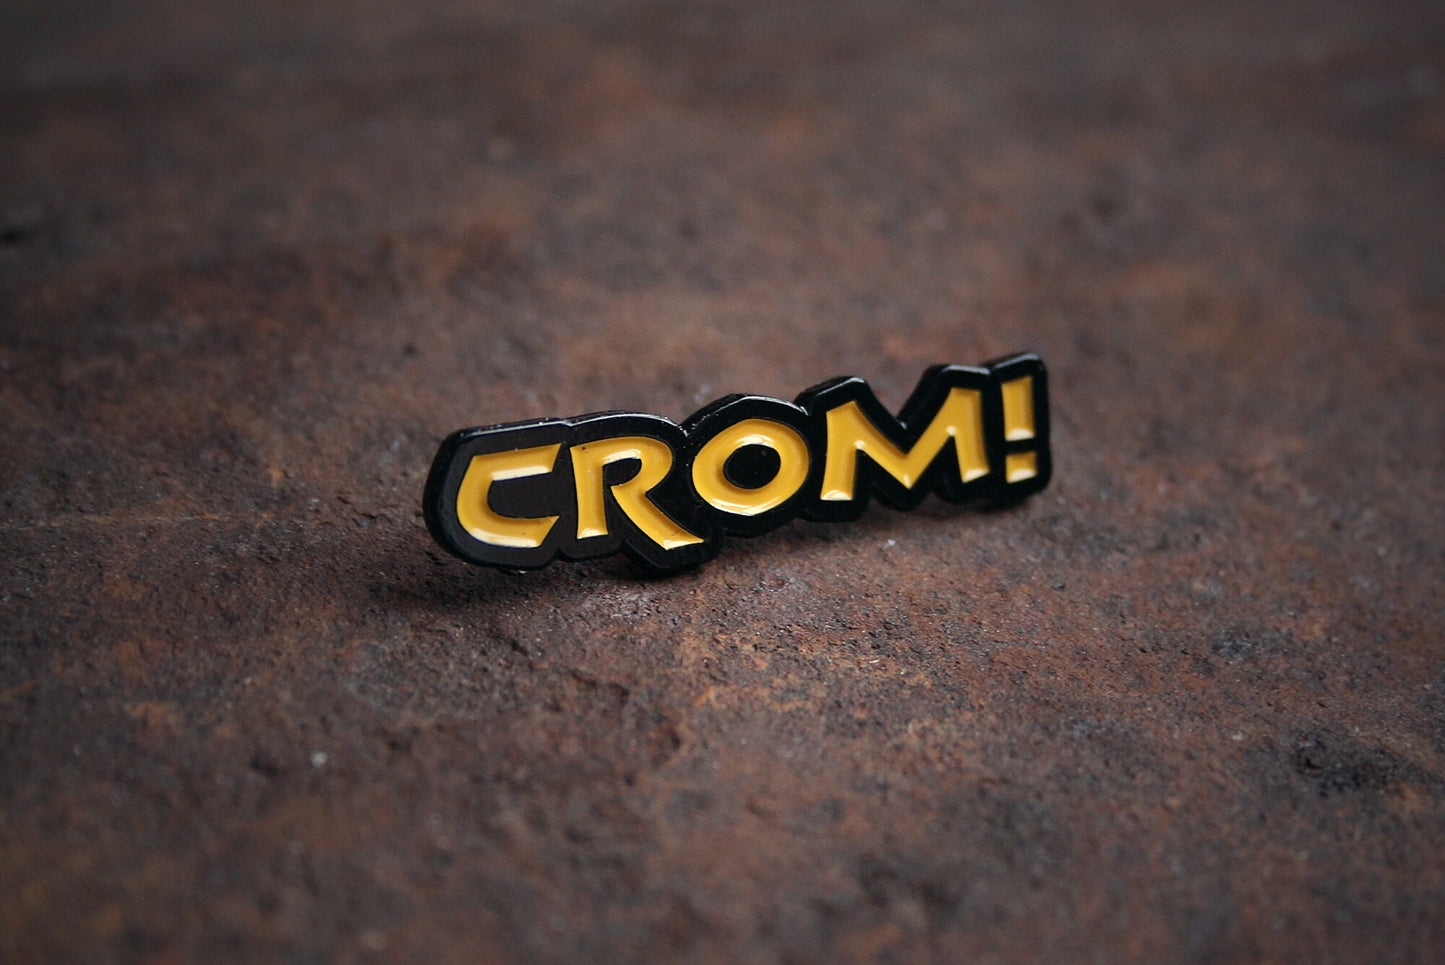 CROM!, Conan - PIN